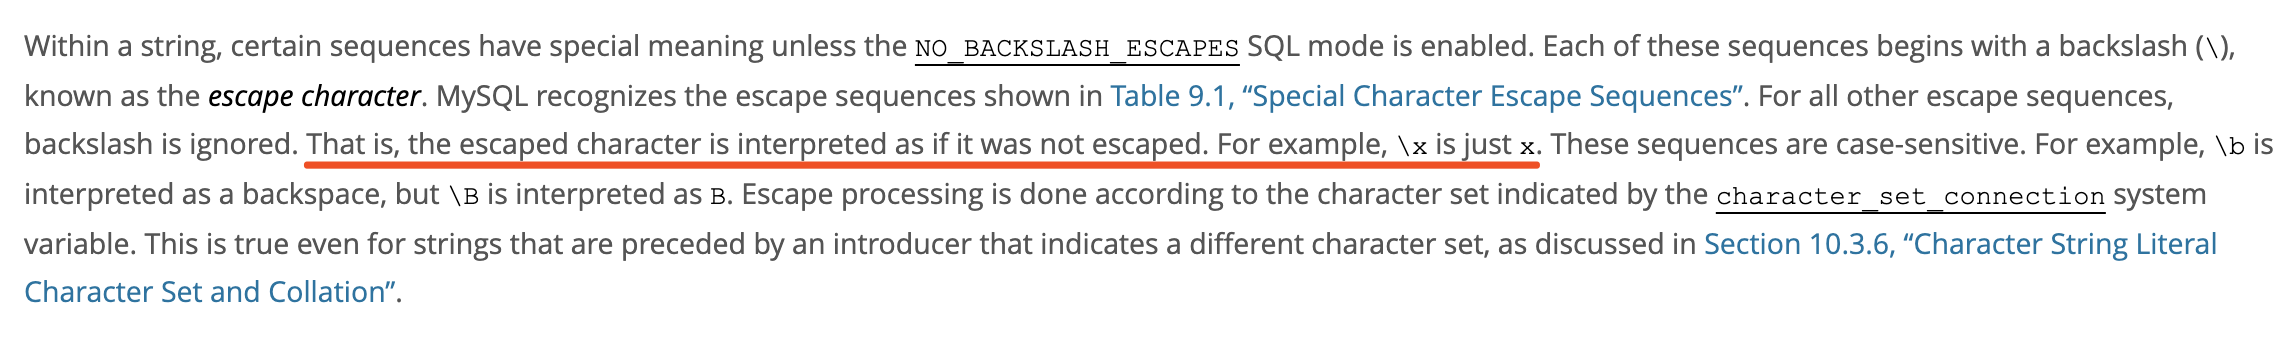 MySQL在插入数据时默认情况下会删除字段中的转义字符